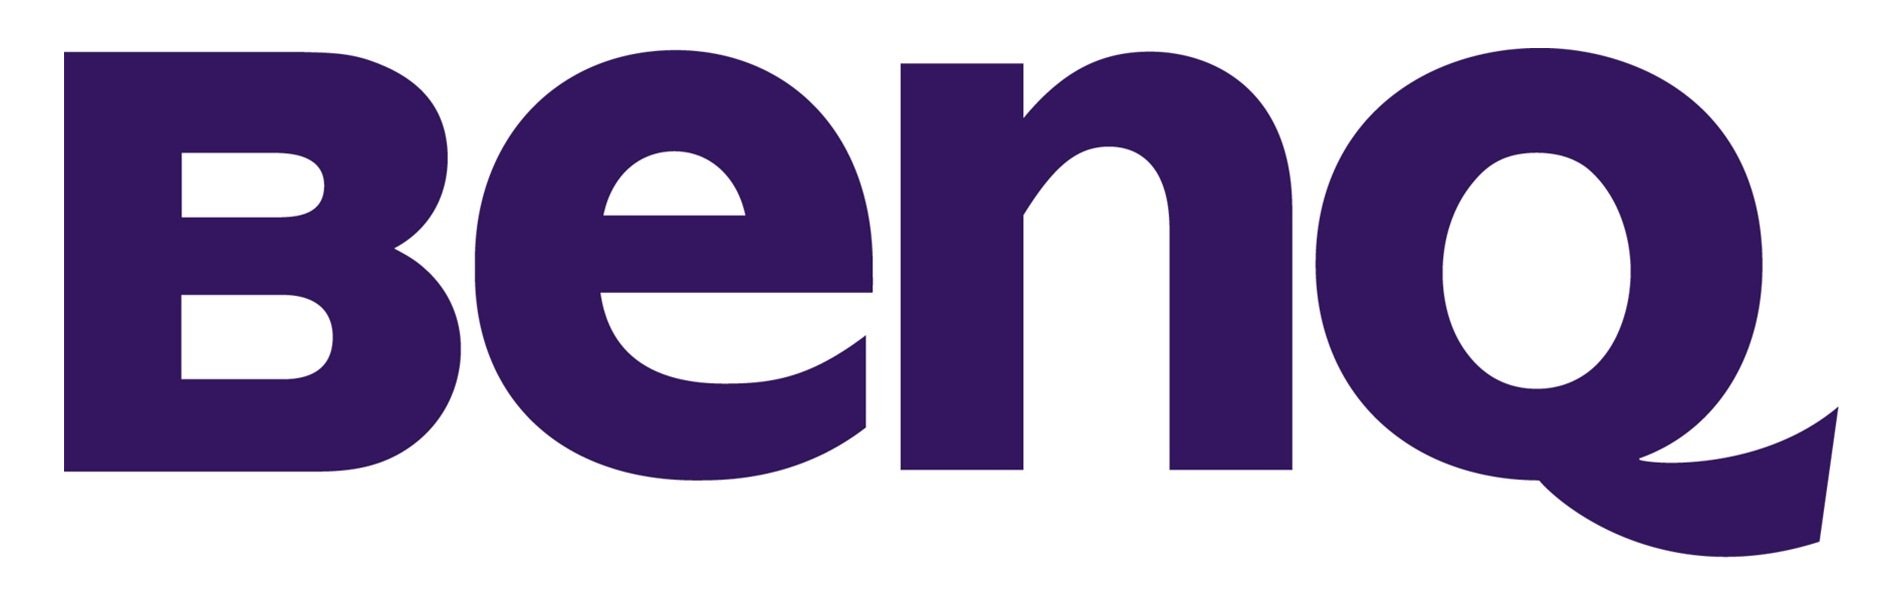 https://0201.nccdn.net/1_2/000/000/124/a66/benq-logo.jpg